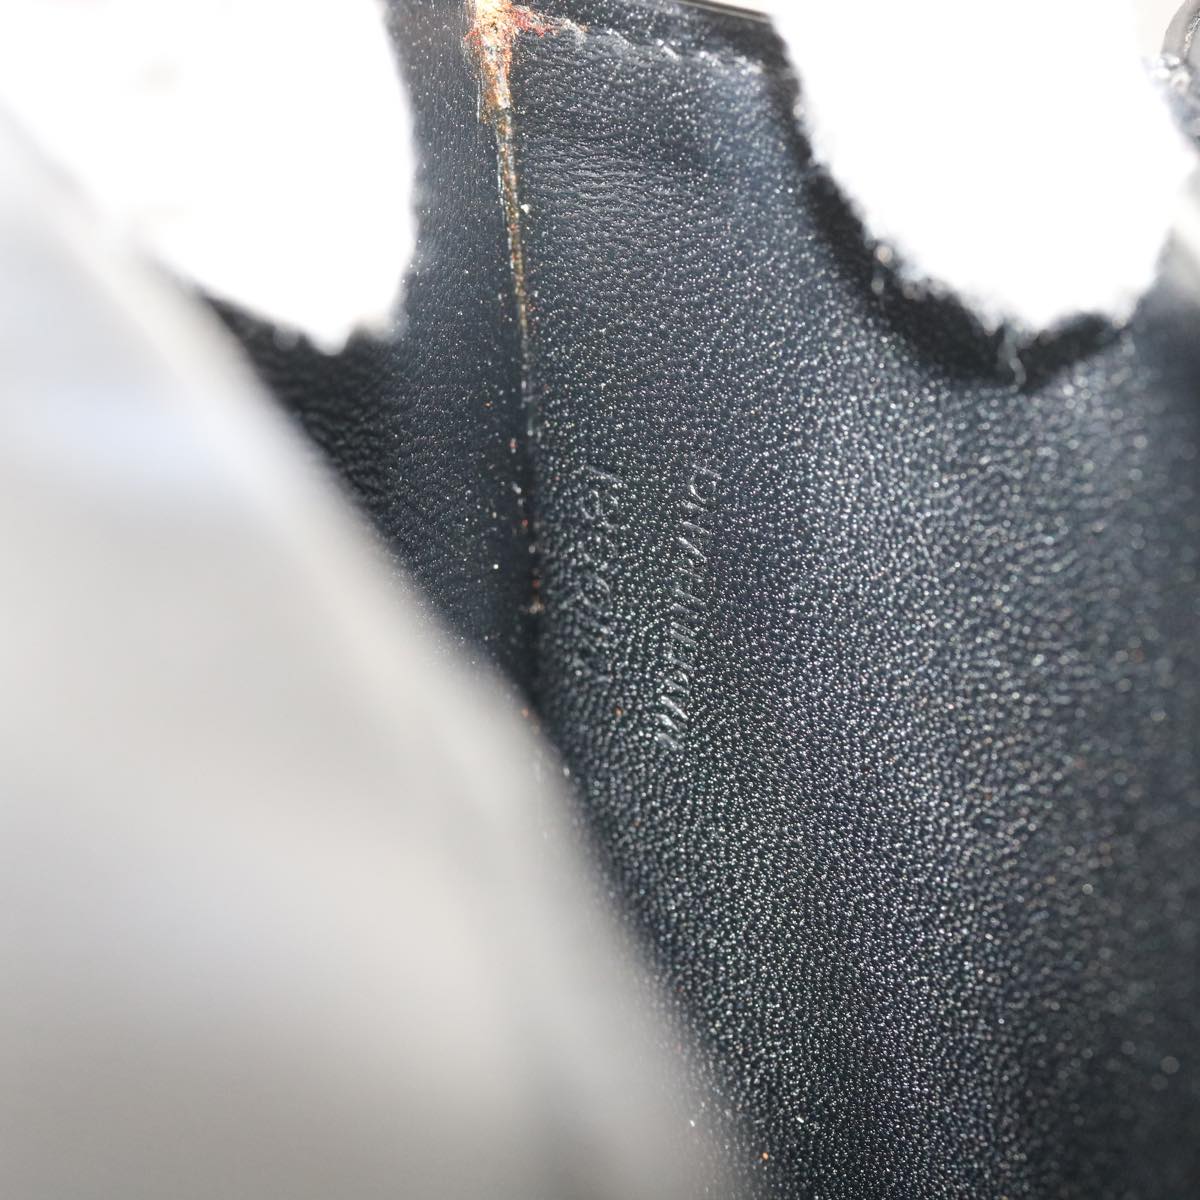 LOUIS VUITTON Opera Line Delph Shoulder Bag Leather Black M63932 LV Auth 56152